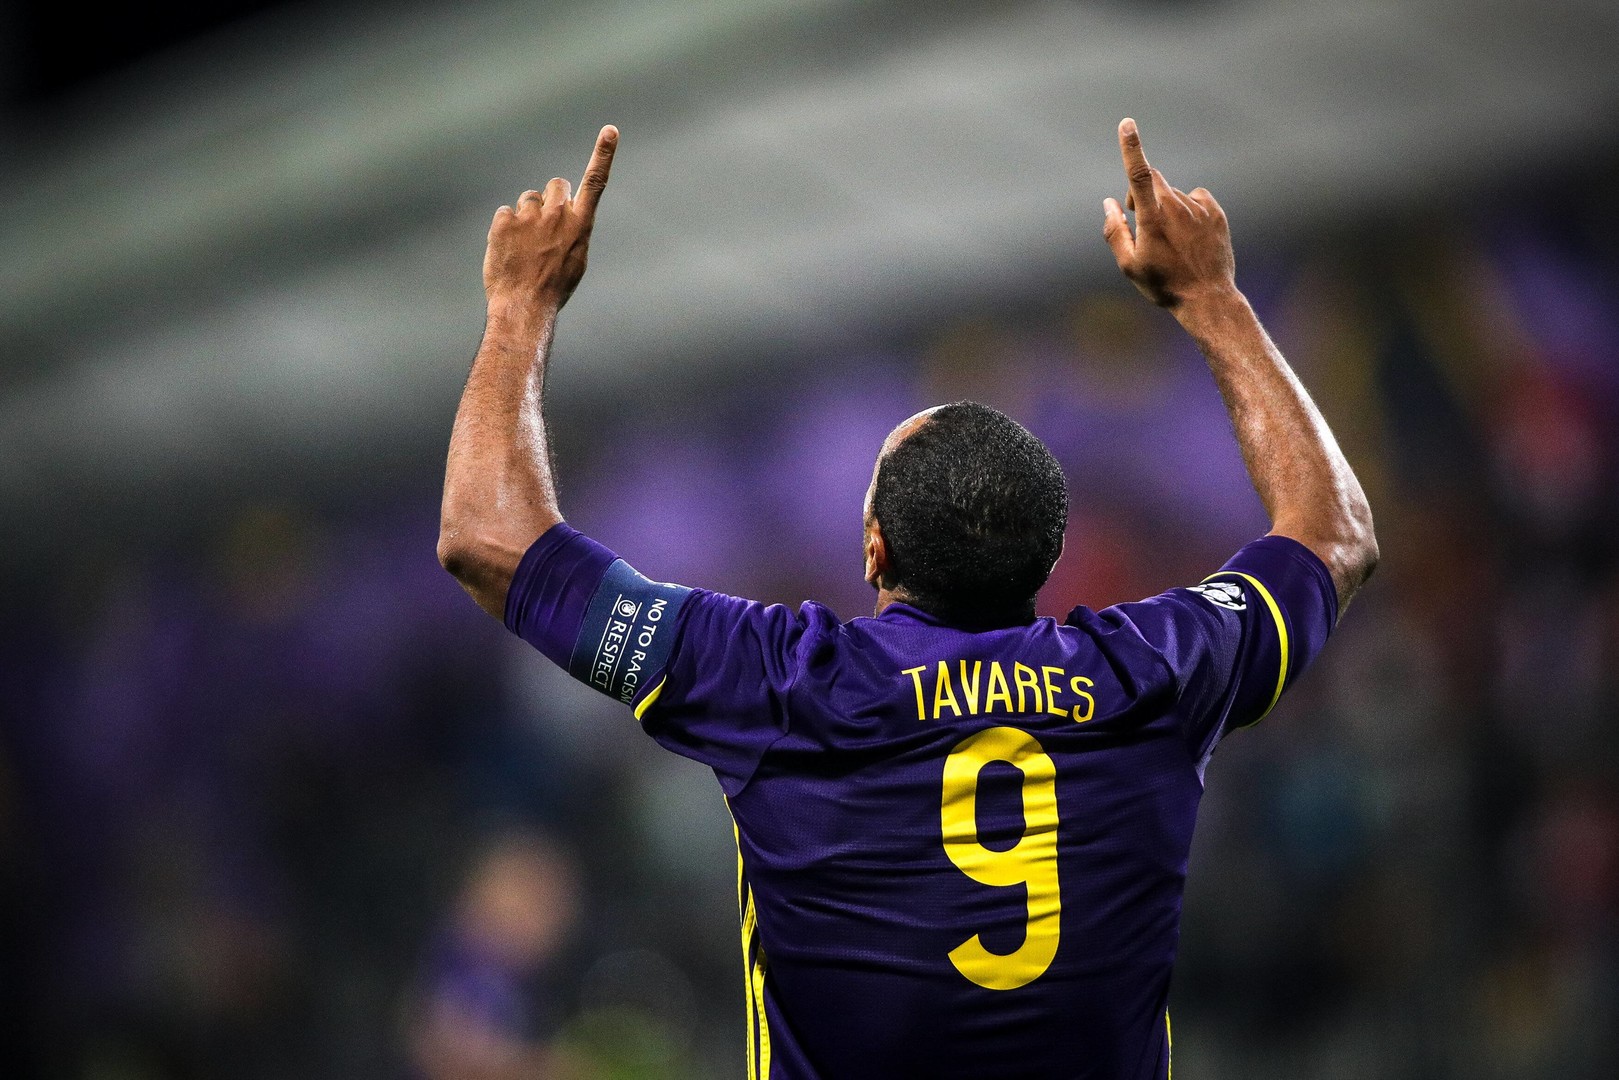 Marcos Tavares se omenja kot igralec, ki bi lahko odločil tekmo.